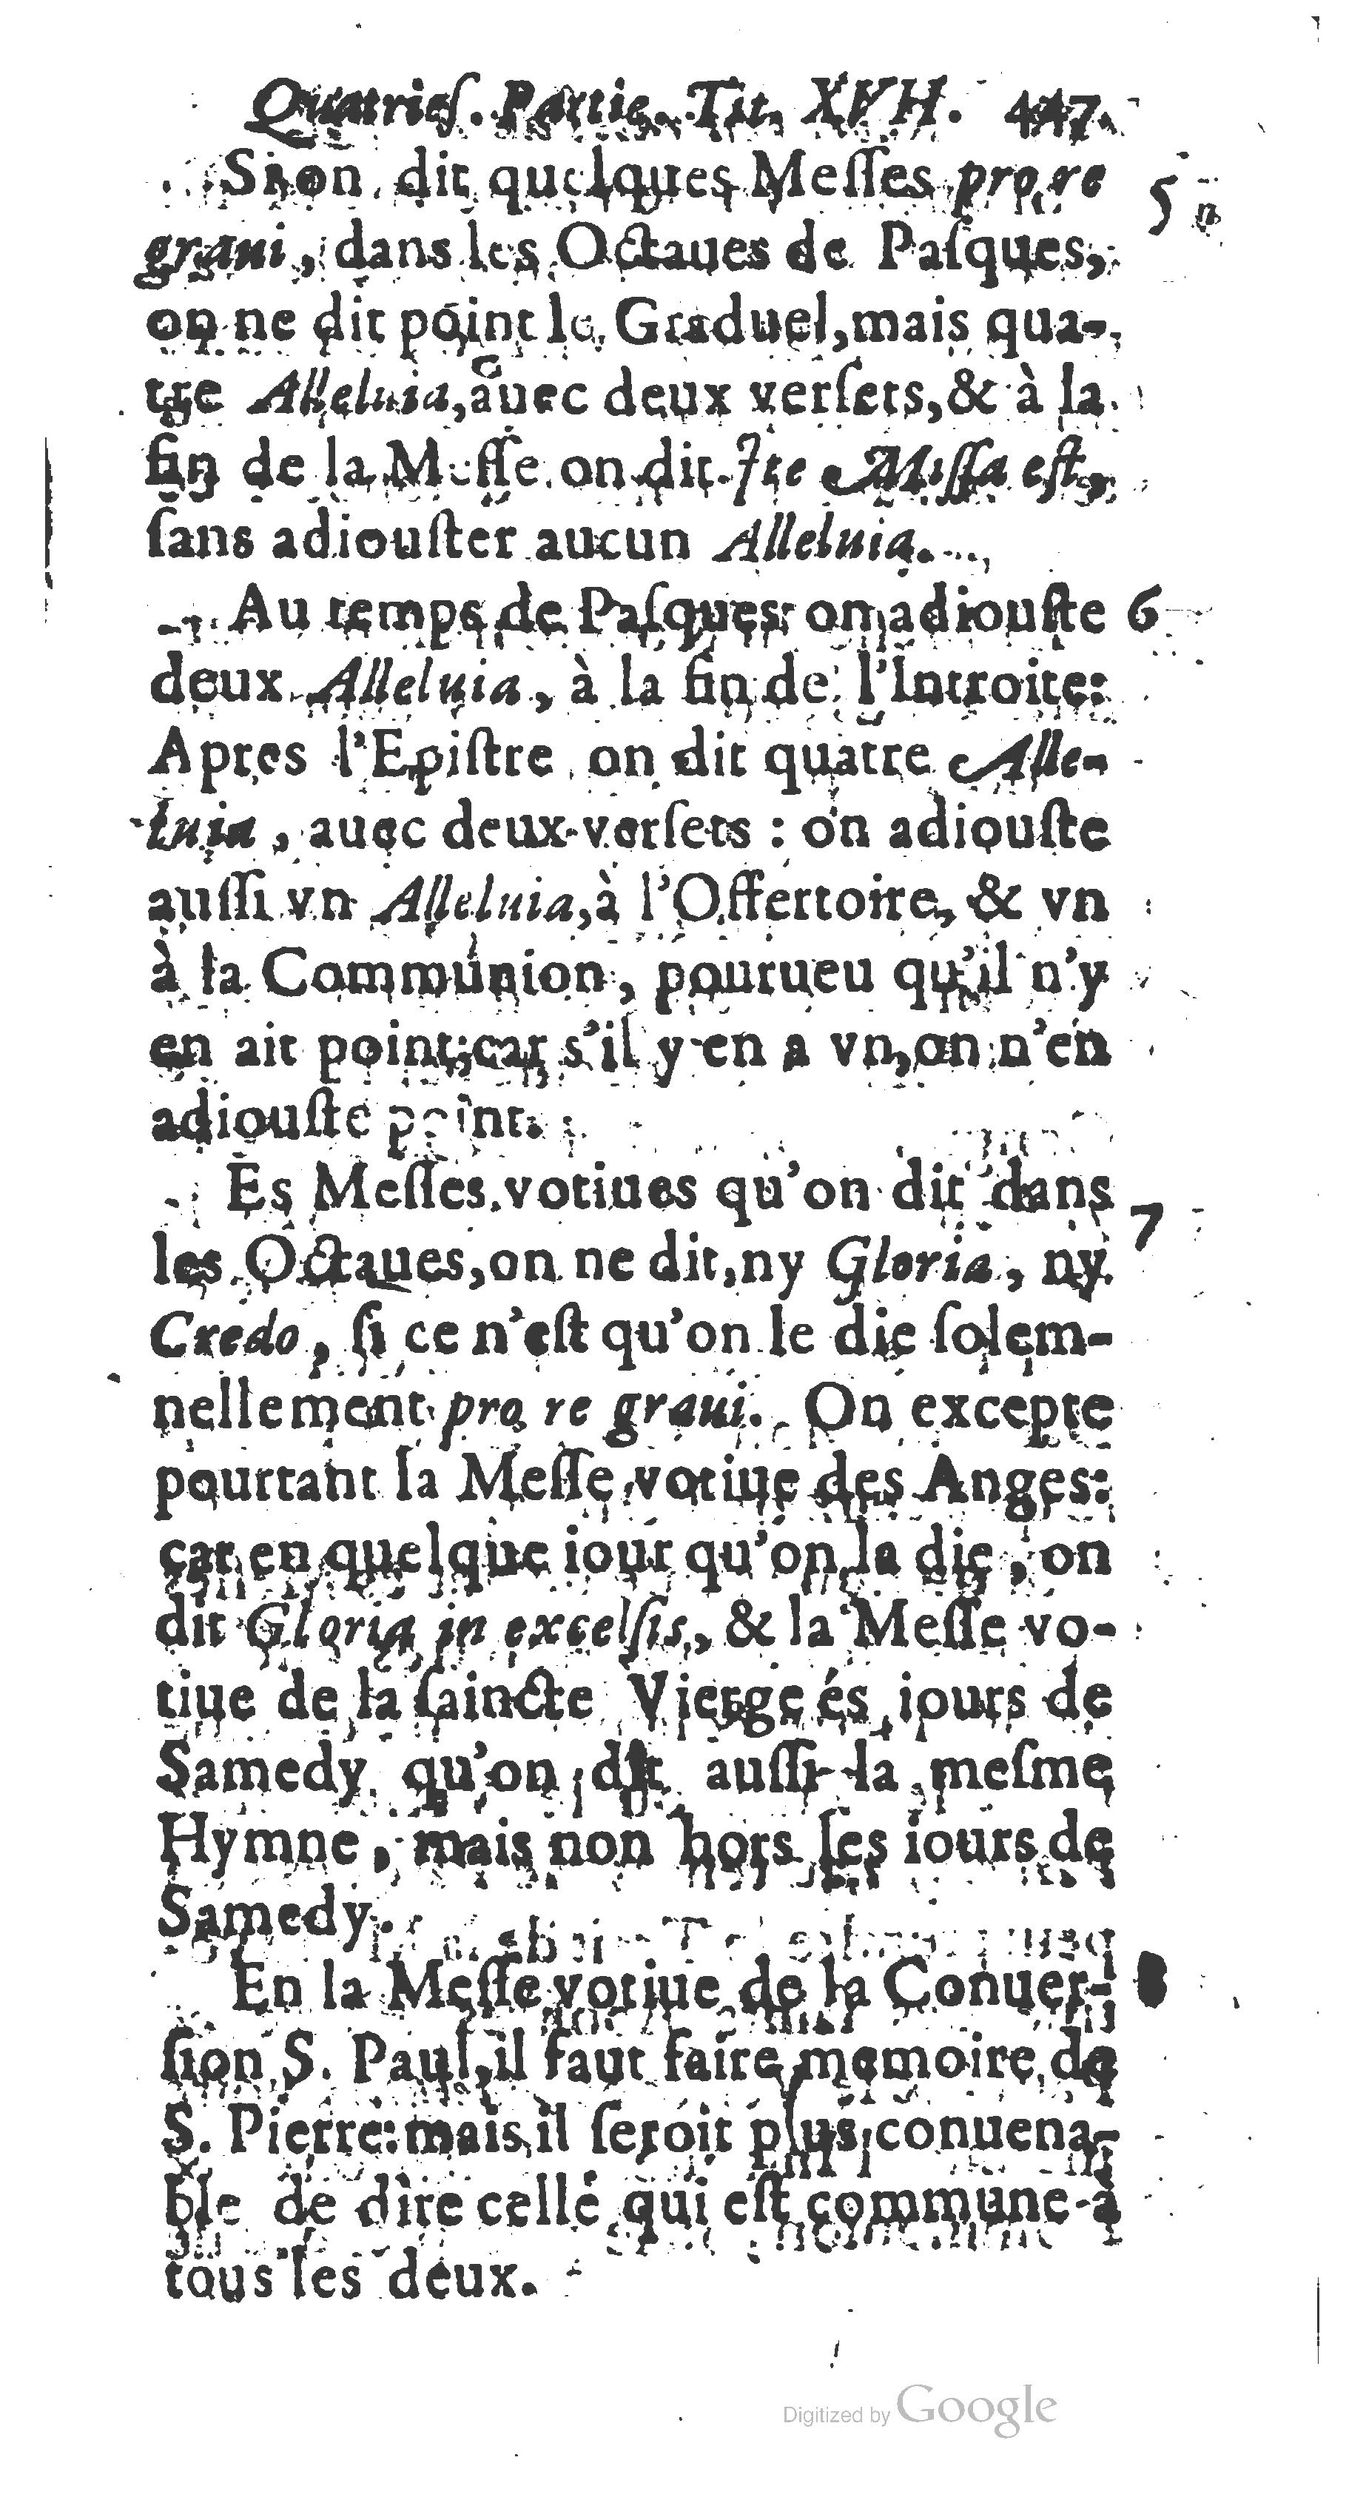 1651 Abrégé du trésor des cérémonies ecclésiastiques Guillermet_BM Lyon_Page_466.jpg